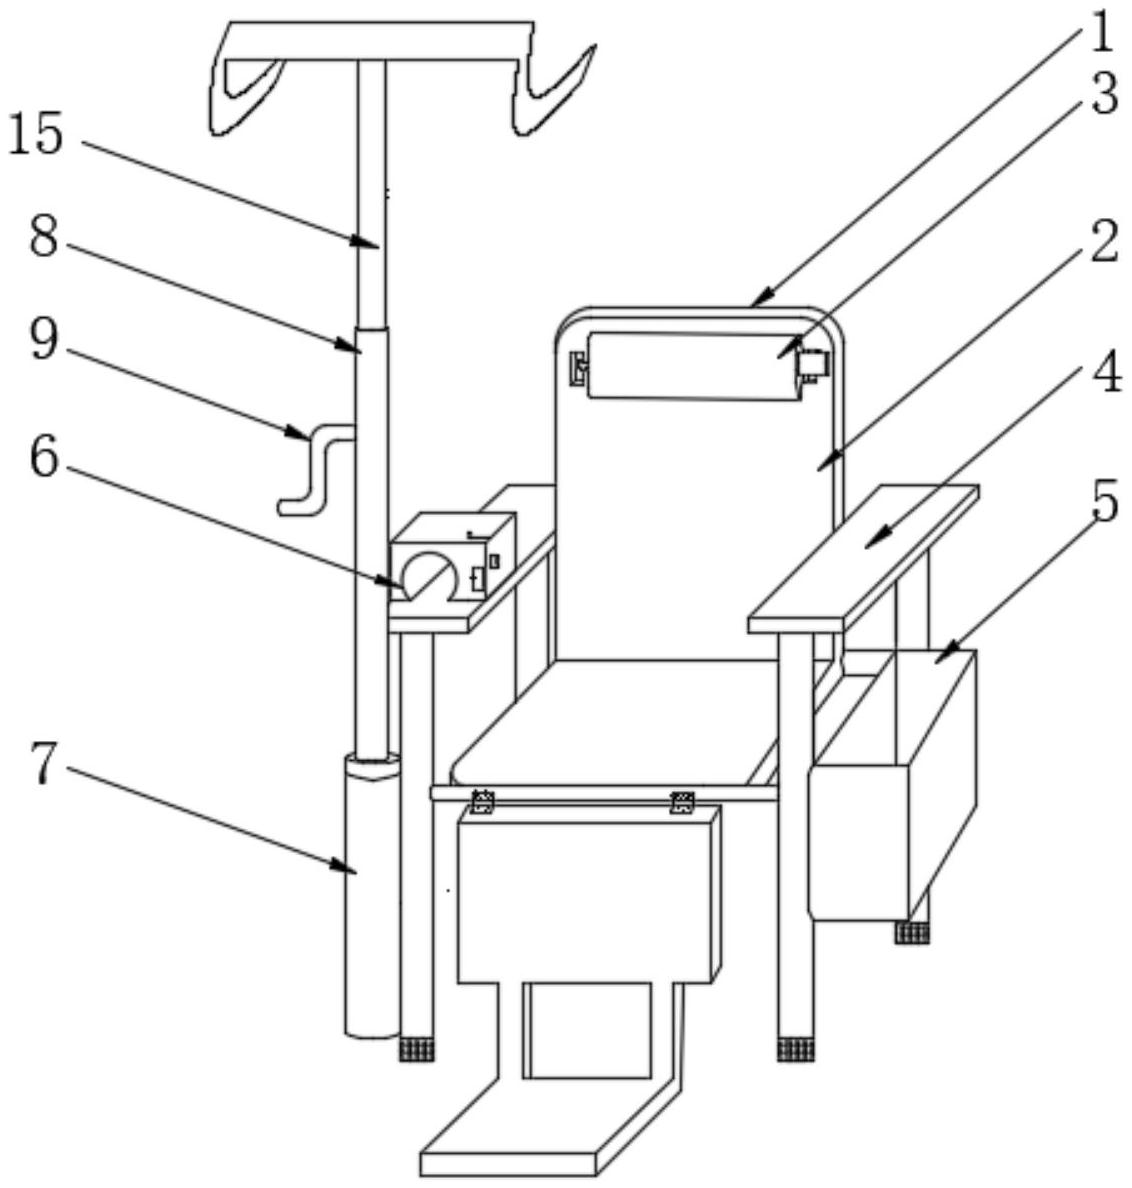 一种新型的多功能输液椅专利图